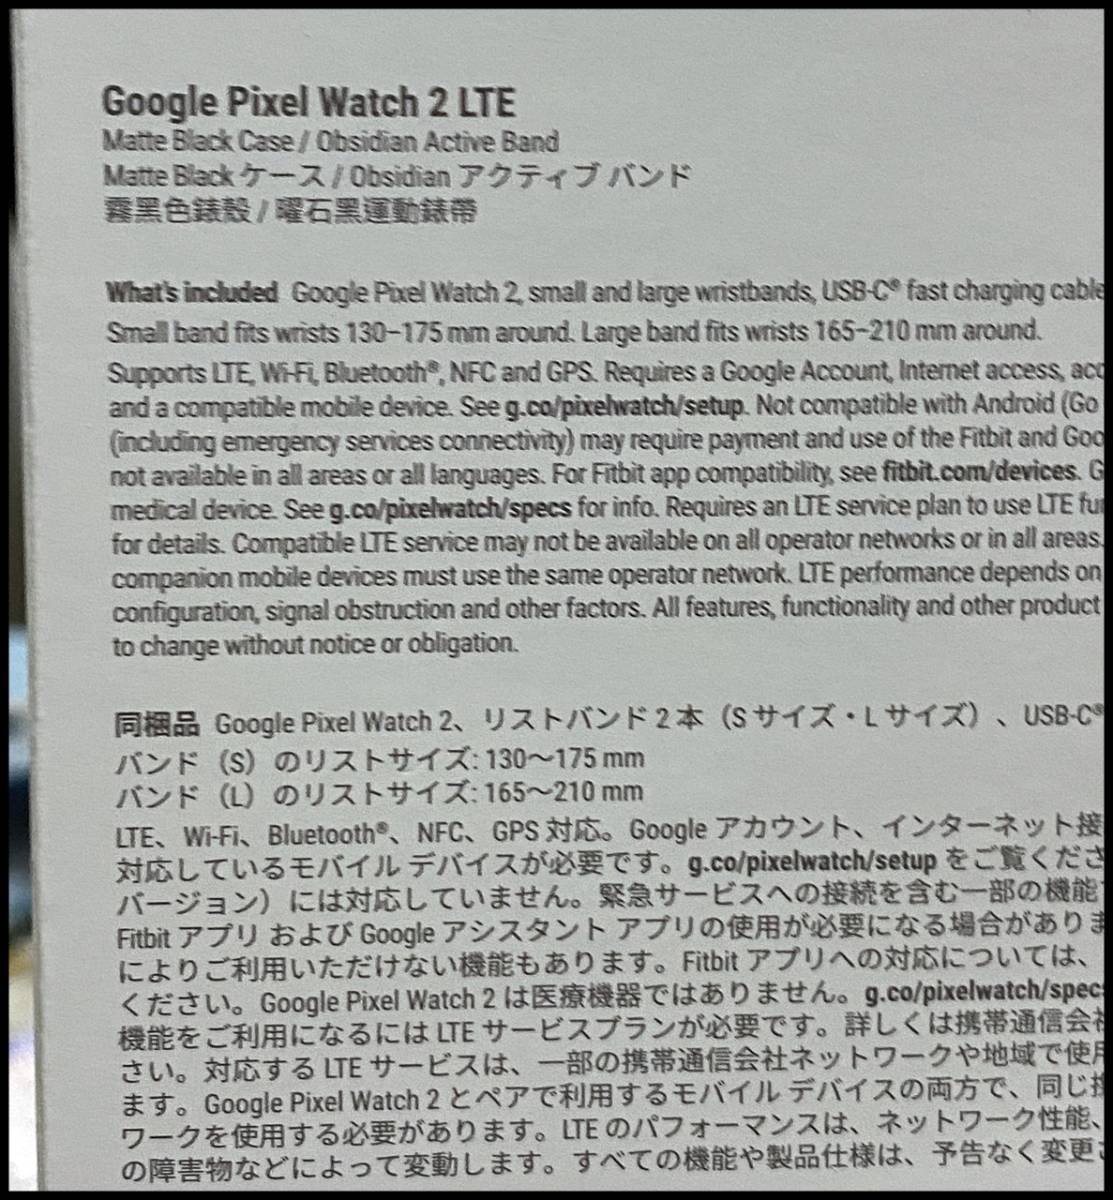 未開封 Google Pixel Watch 2 LTE ブラック GA05025 Matte Black Obsidian アクティブバンド グーグル ピクセルウォッチ2 (7)の画像3